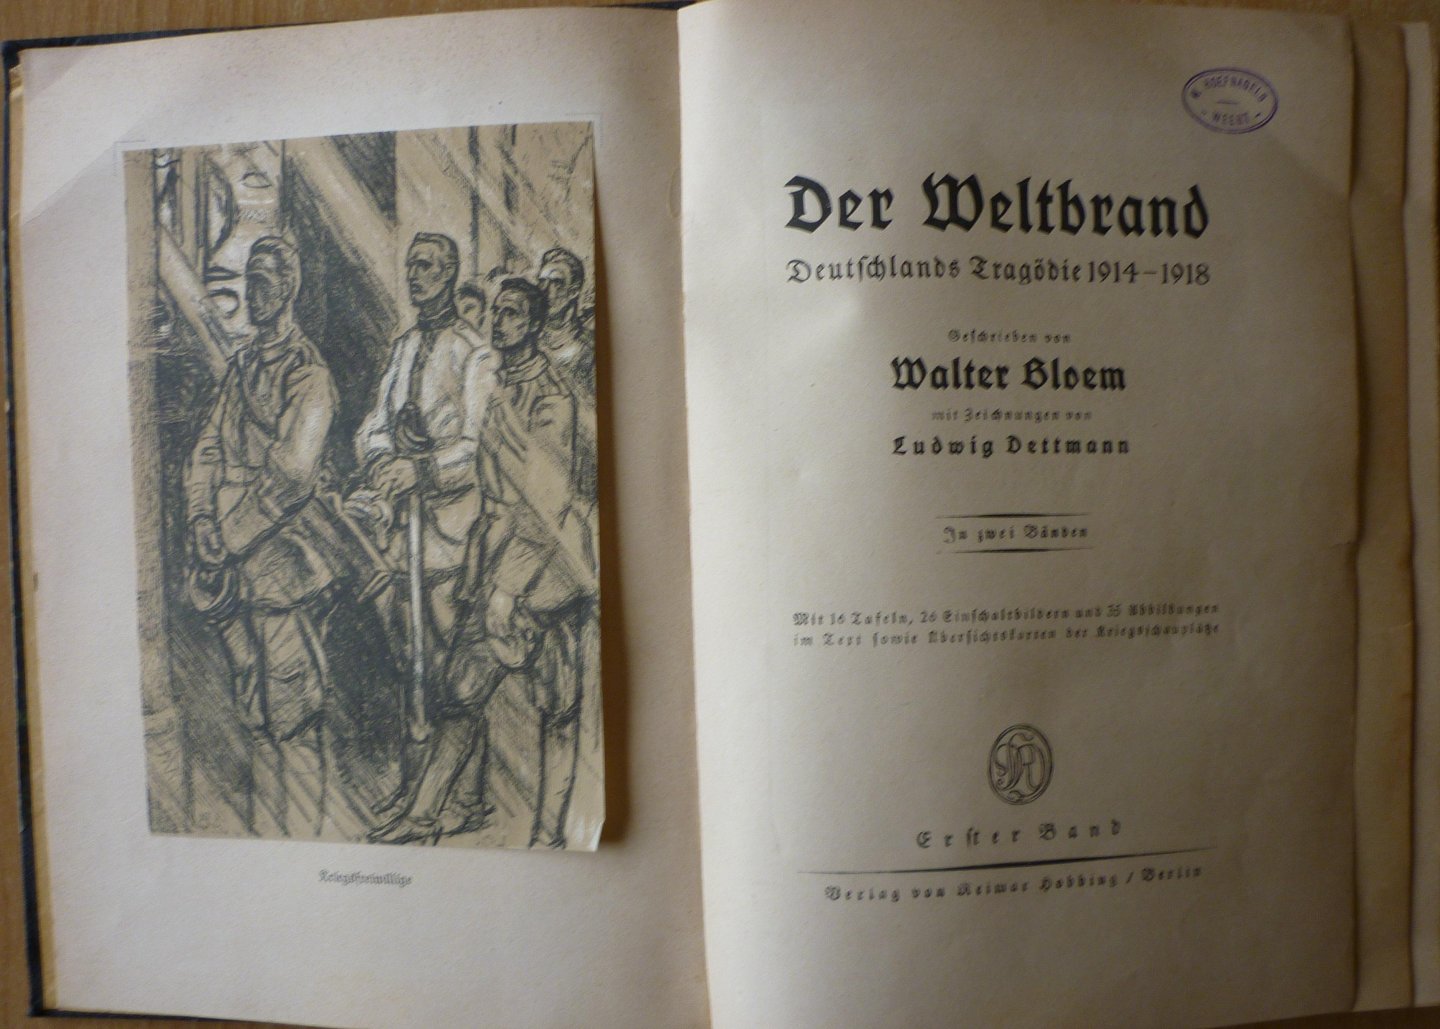 Bloem, Walter - Der Weltbrand Deutschlands Tragödie 1914-1918. 2 Bände